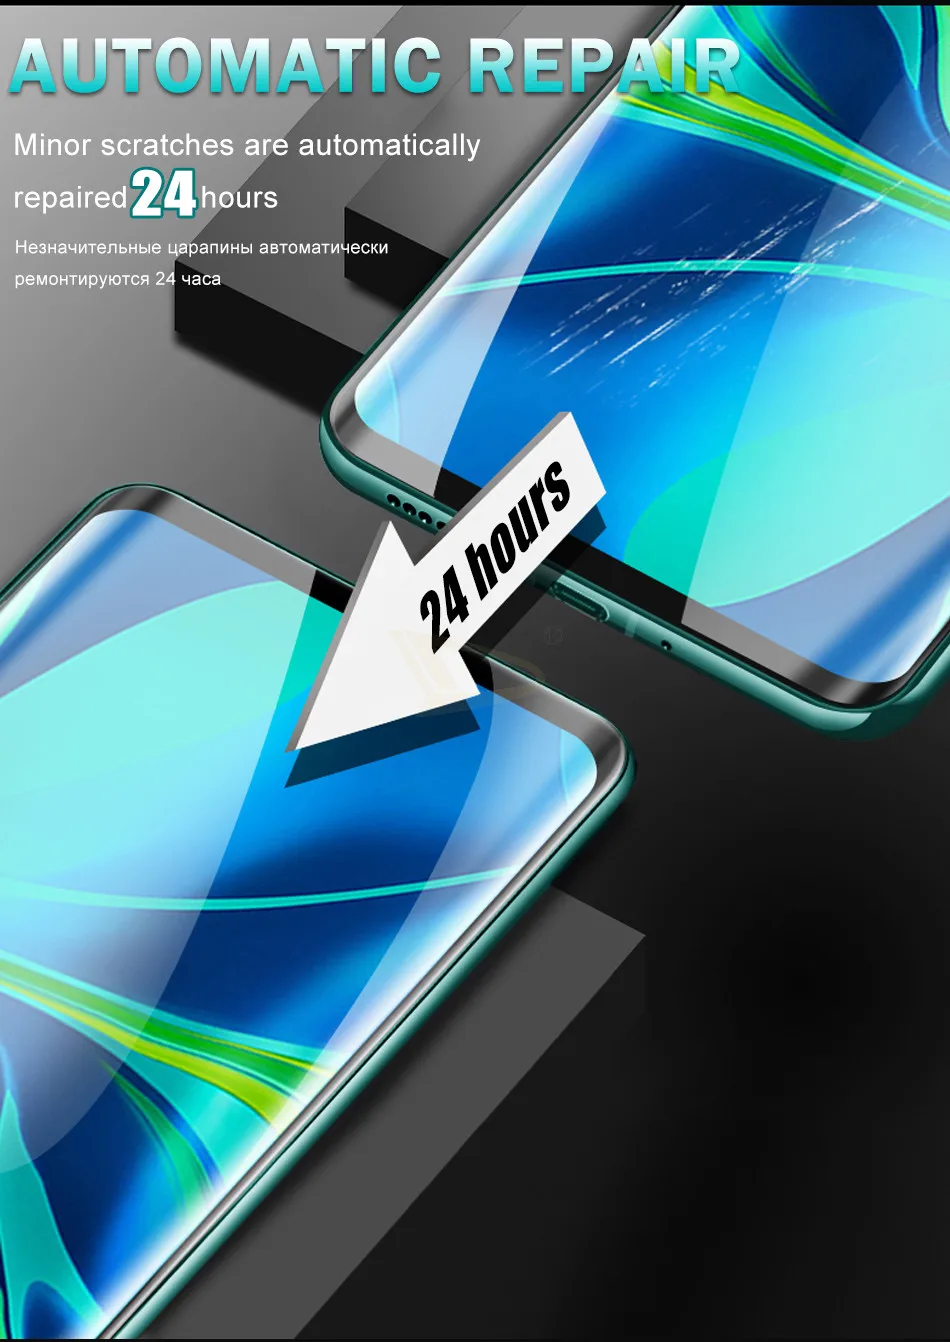 3-1 шт 100D Полный экран протектор Гидрогелевая пленка для Xiaomi Mi Note 10 Pro A3 Lite 9T 9 SE CC9 E крышка защитная пленка не стекло